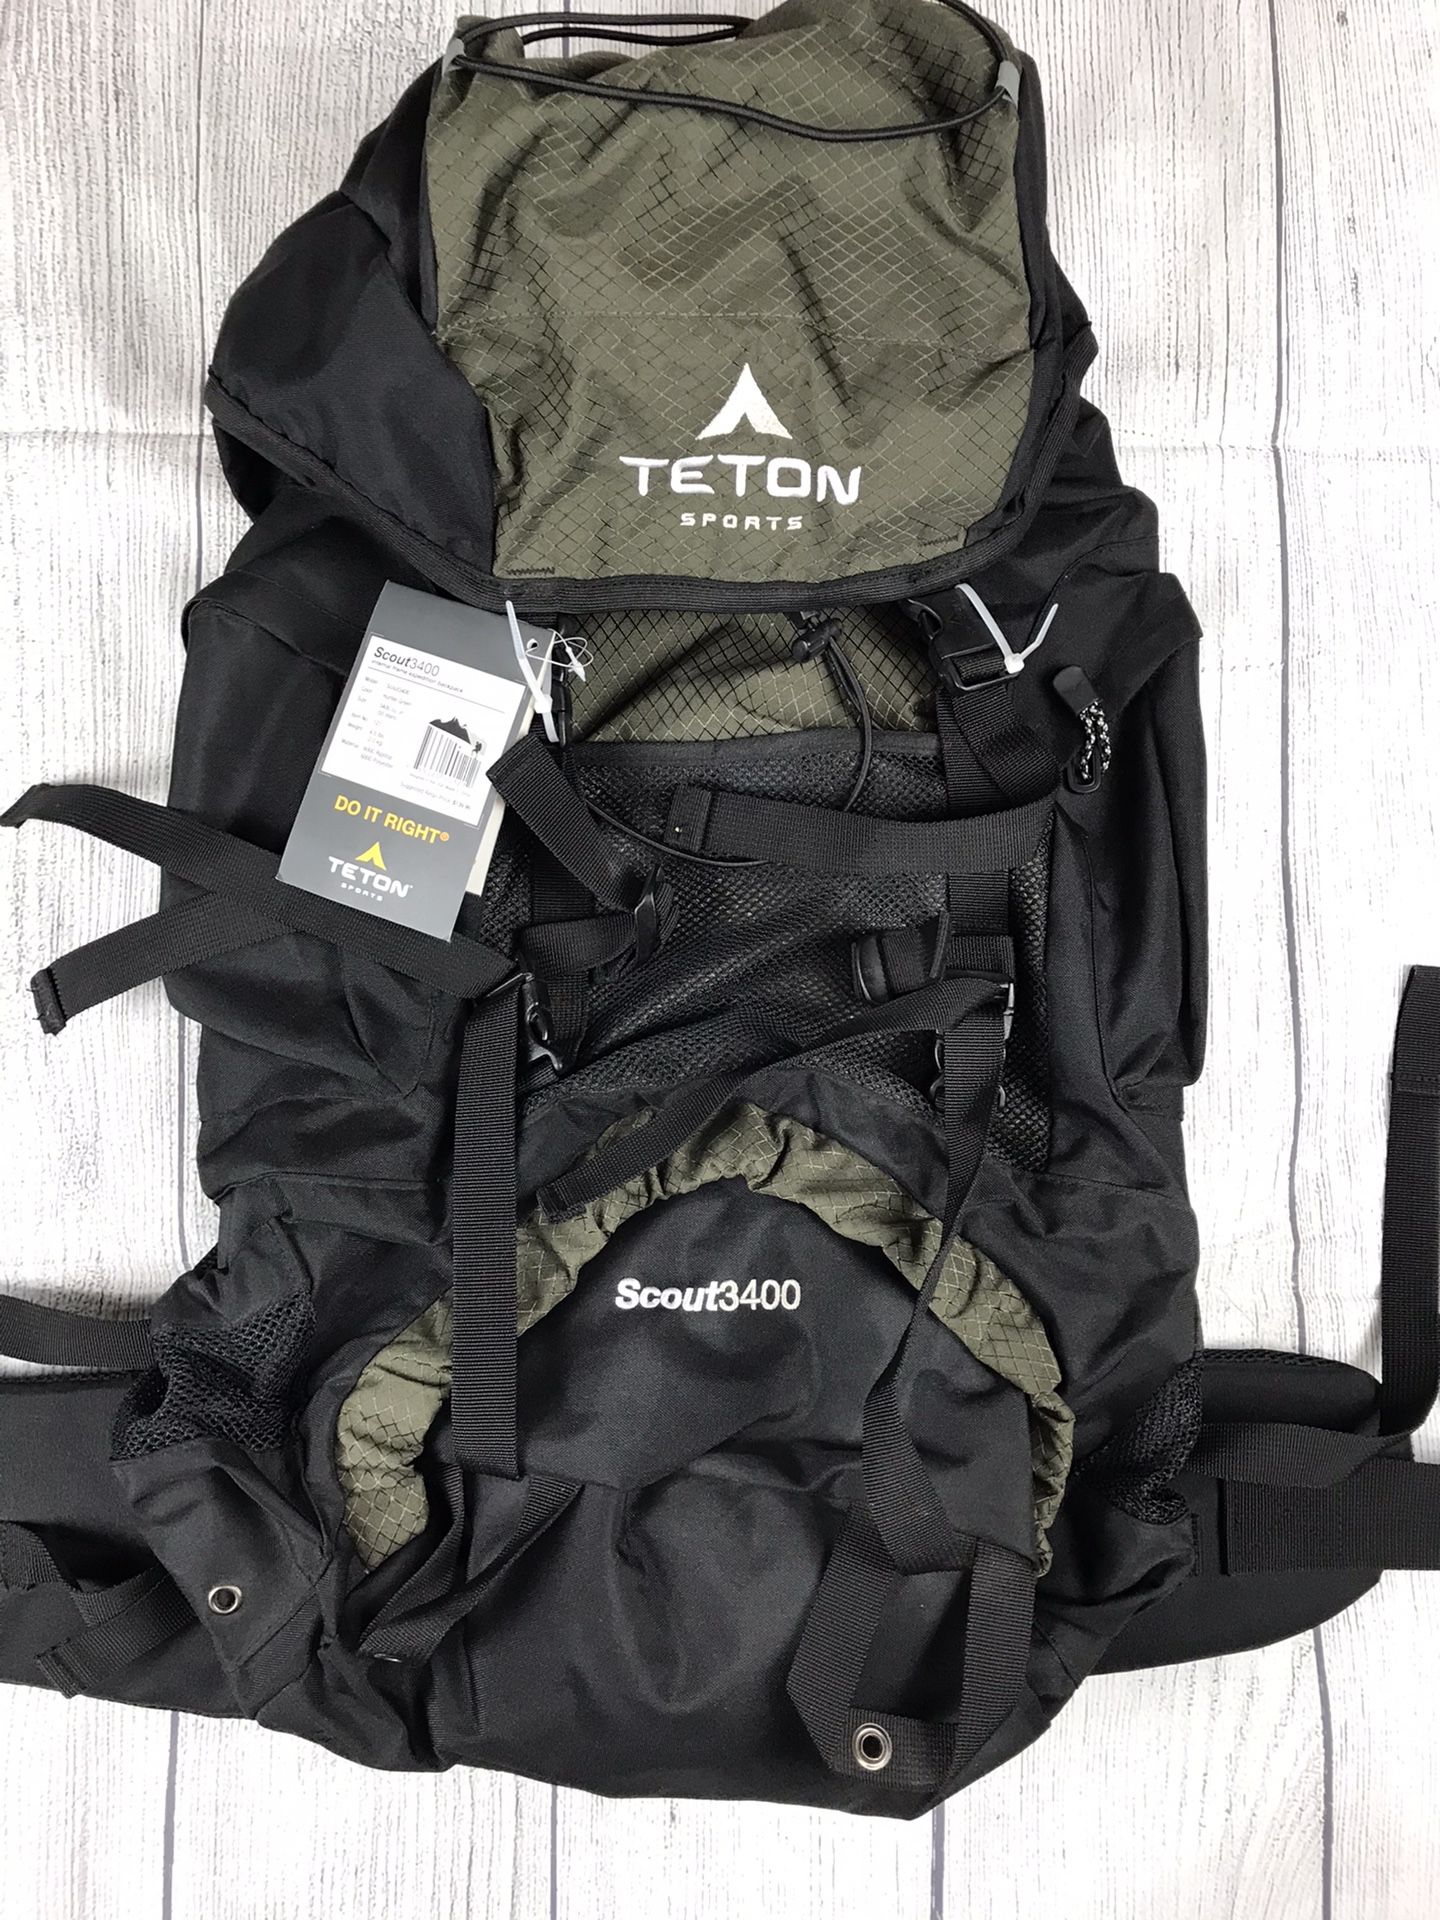 NWT! Teton Sports 3400 hiking backpack